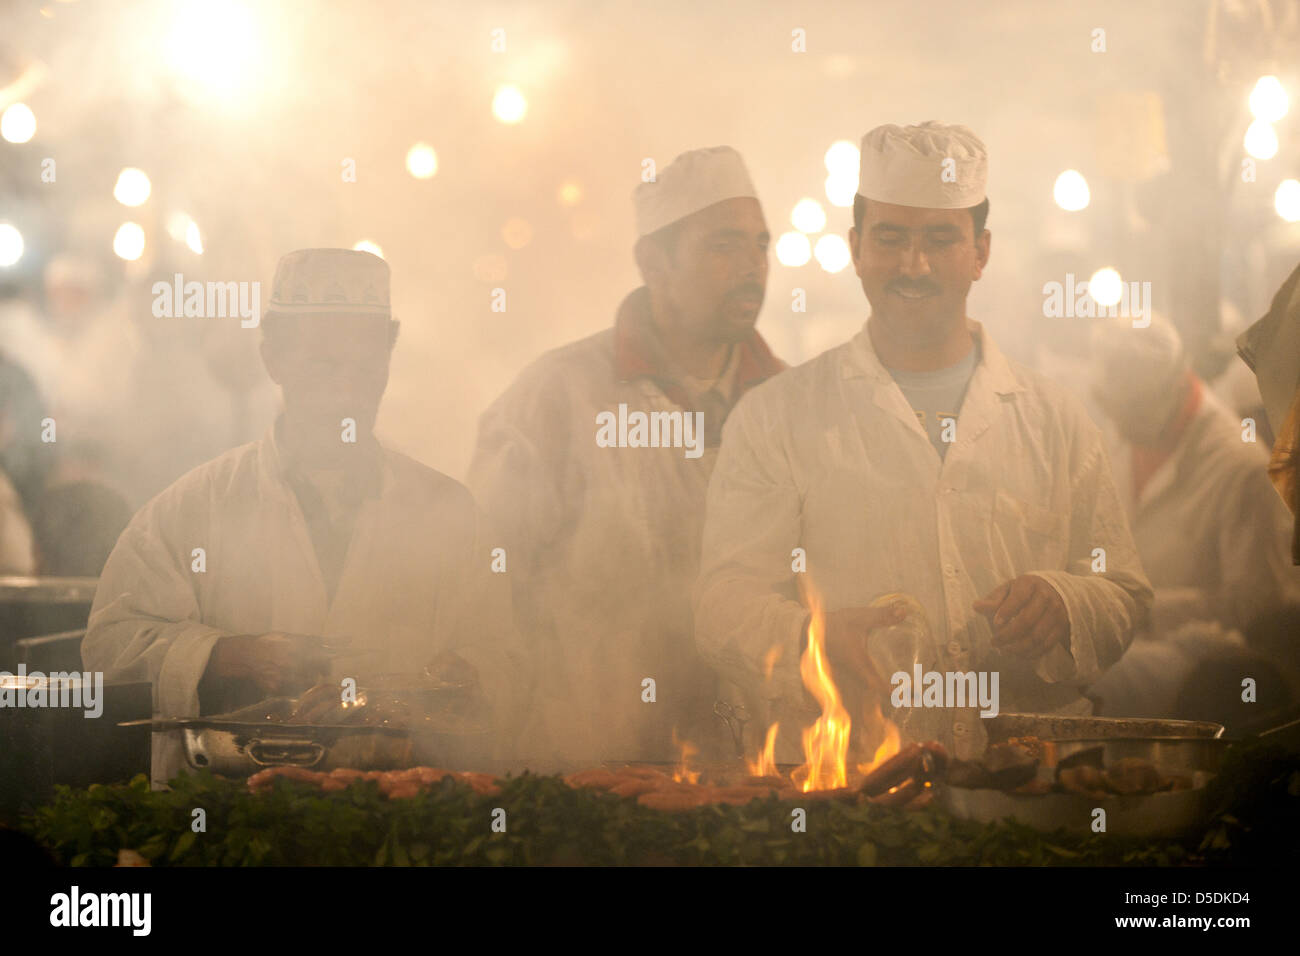 Männer kochen über einem rauchigen Feuer auf einem Wochenmarkt Stand in Djemaa al Fna Platz in Marrkesh, Marokko Stockfoto